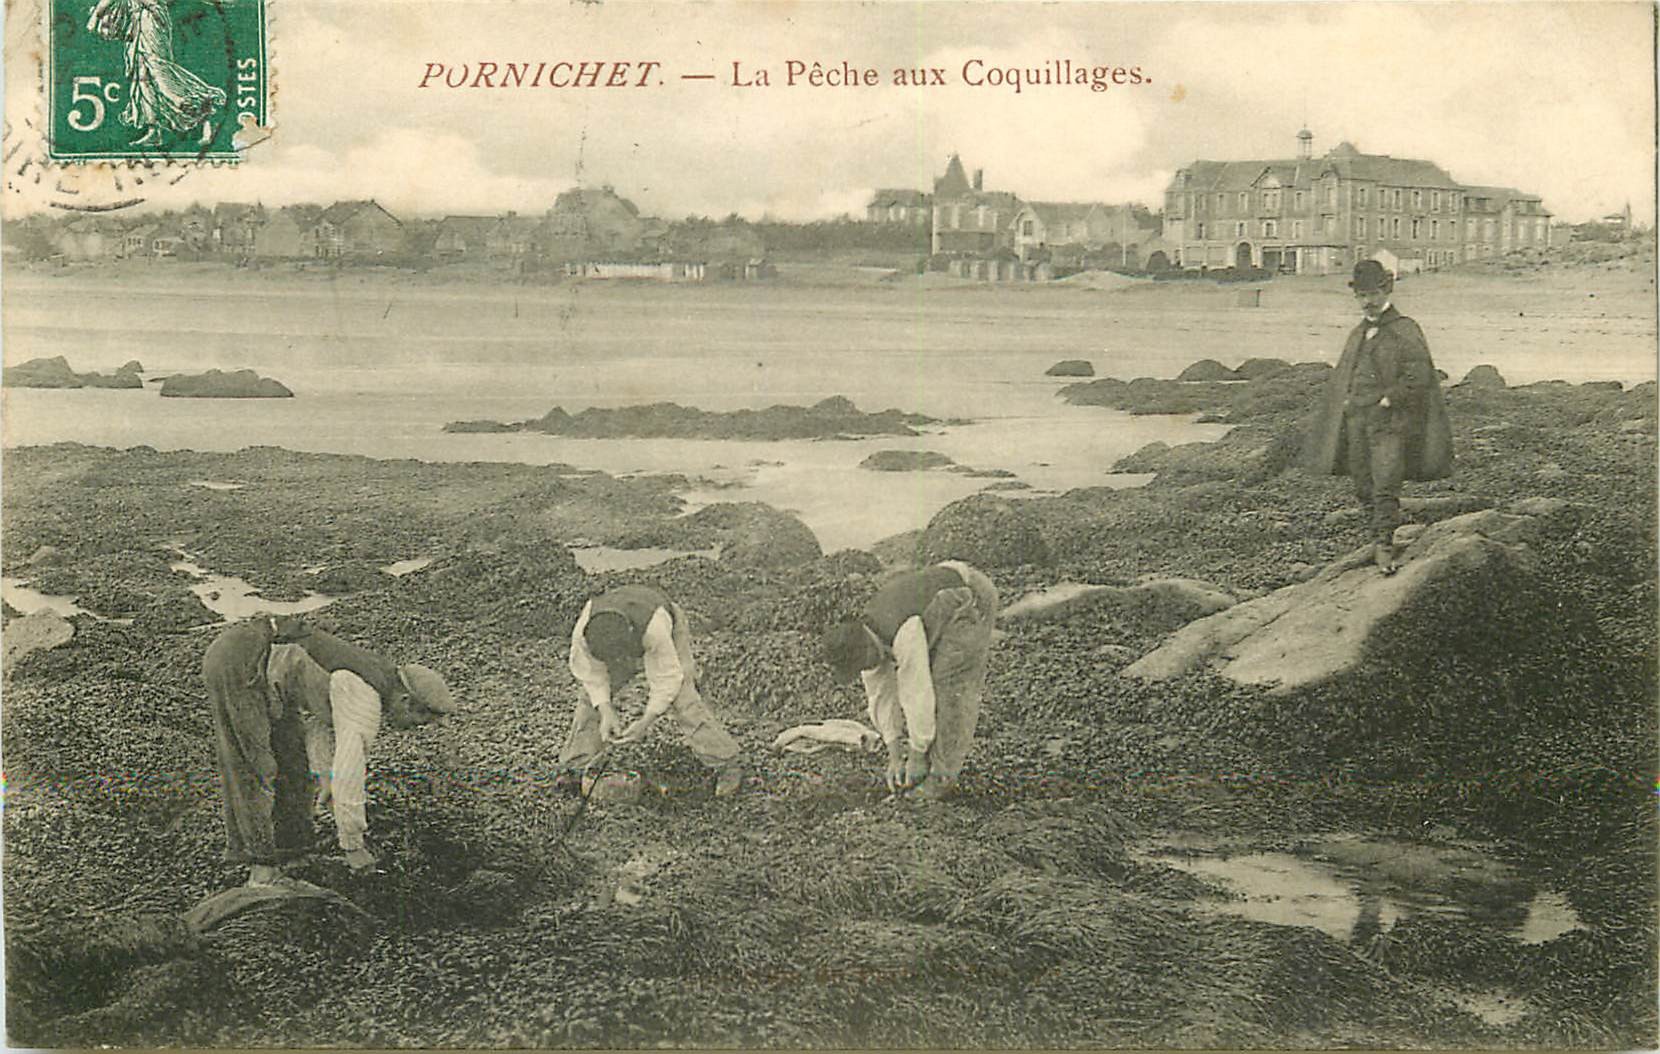 44 PORNICHET. La Pêche aux Coquillages 1910 métiers de la Mer